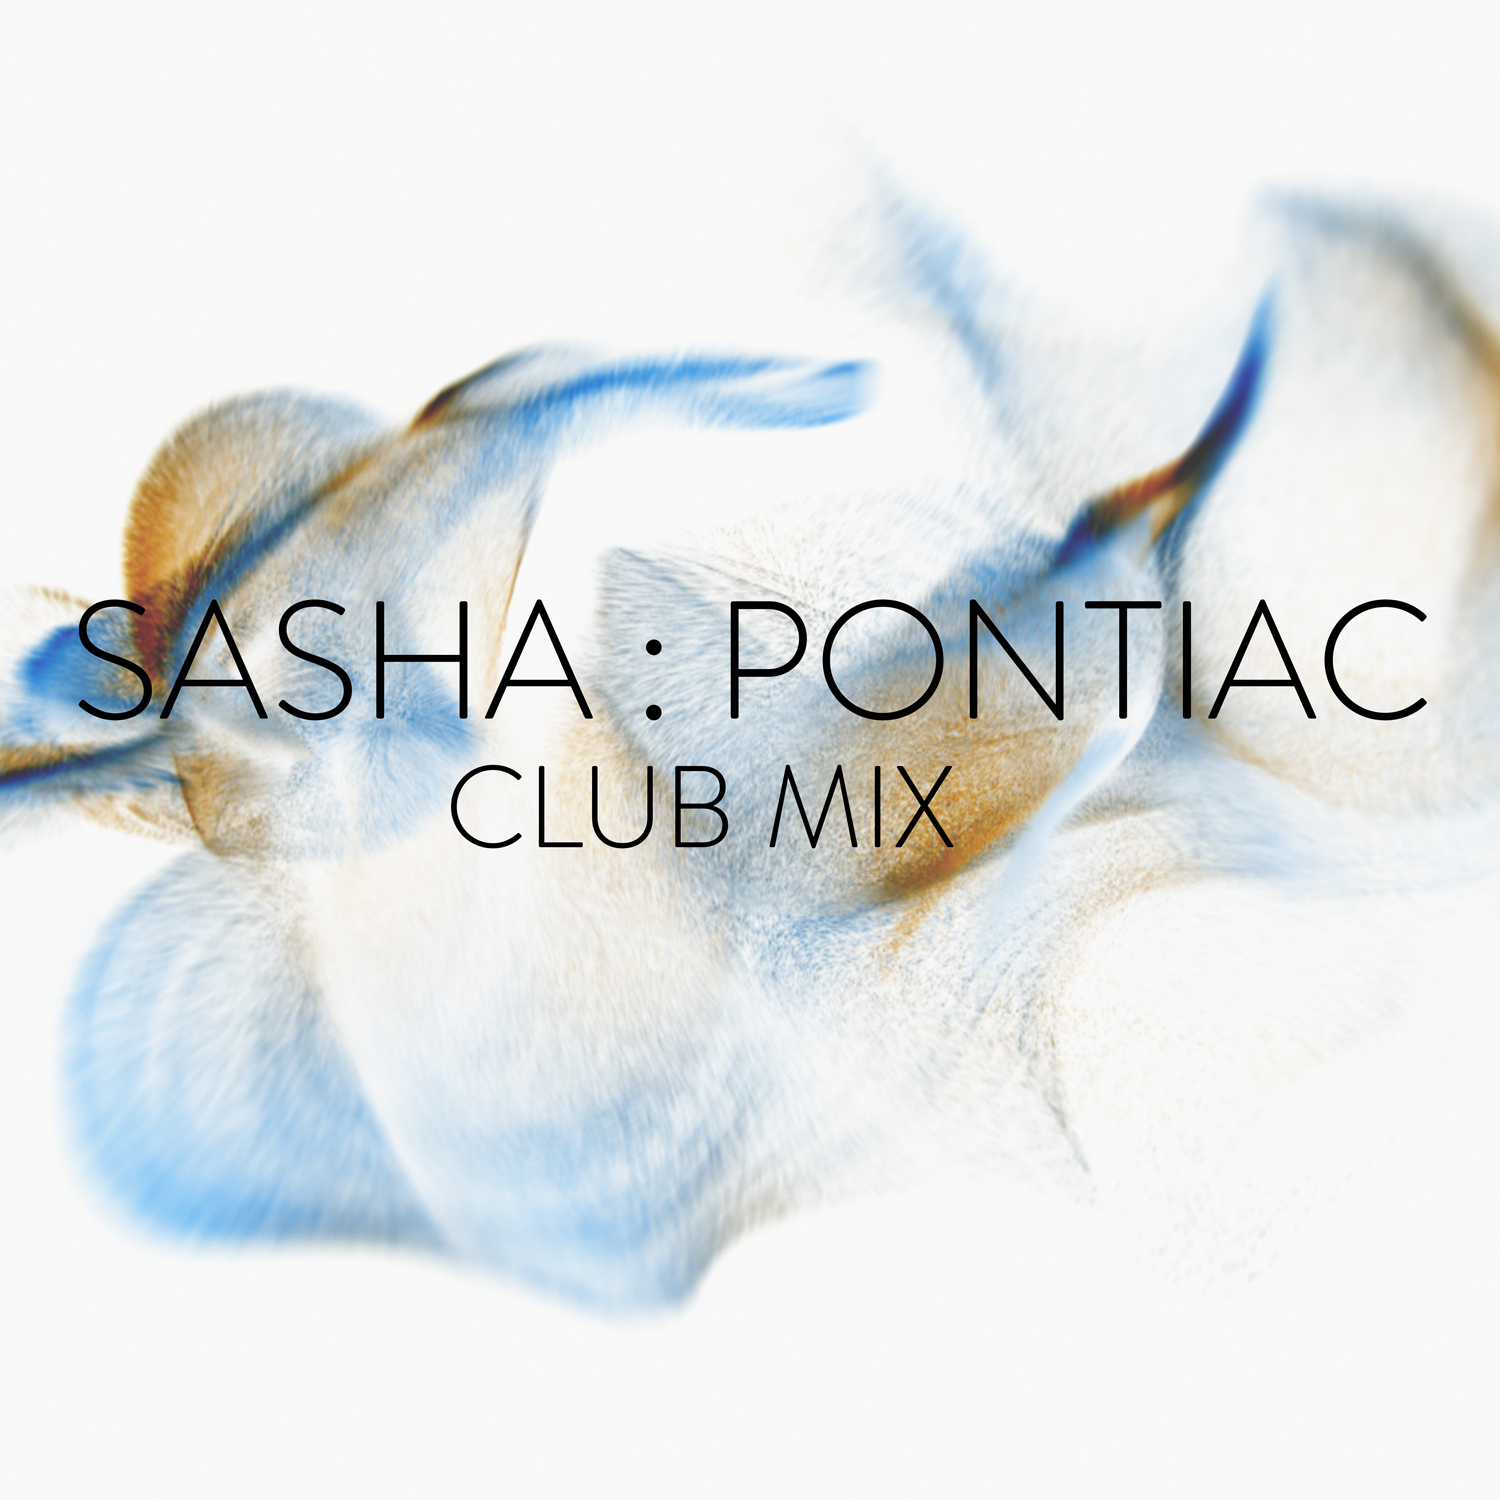 Pontiac (Club Mix)